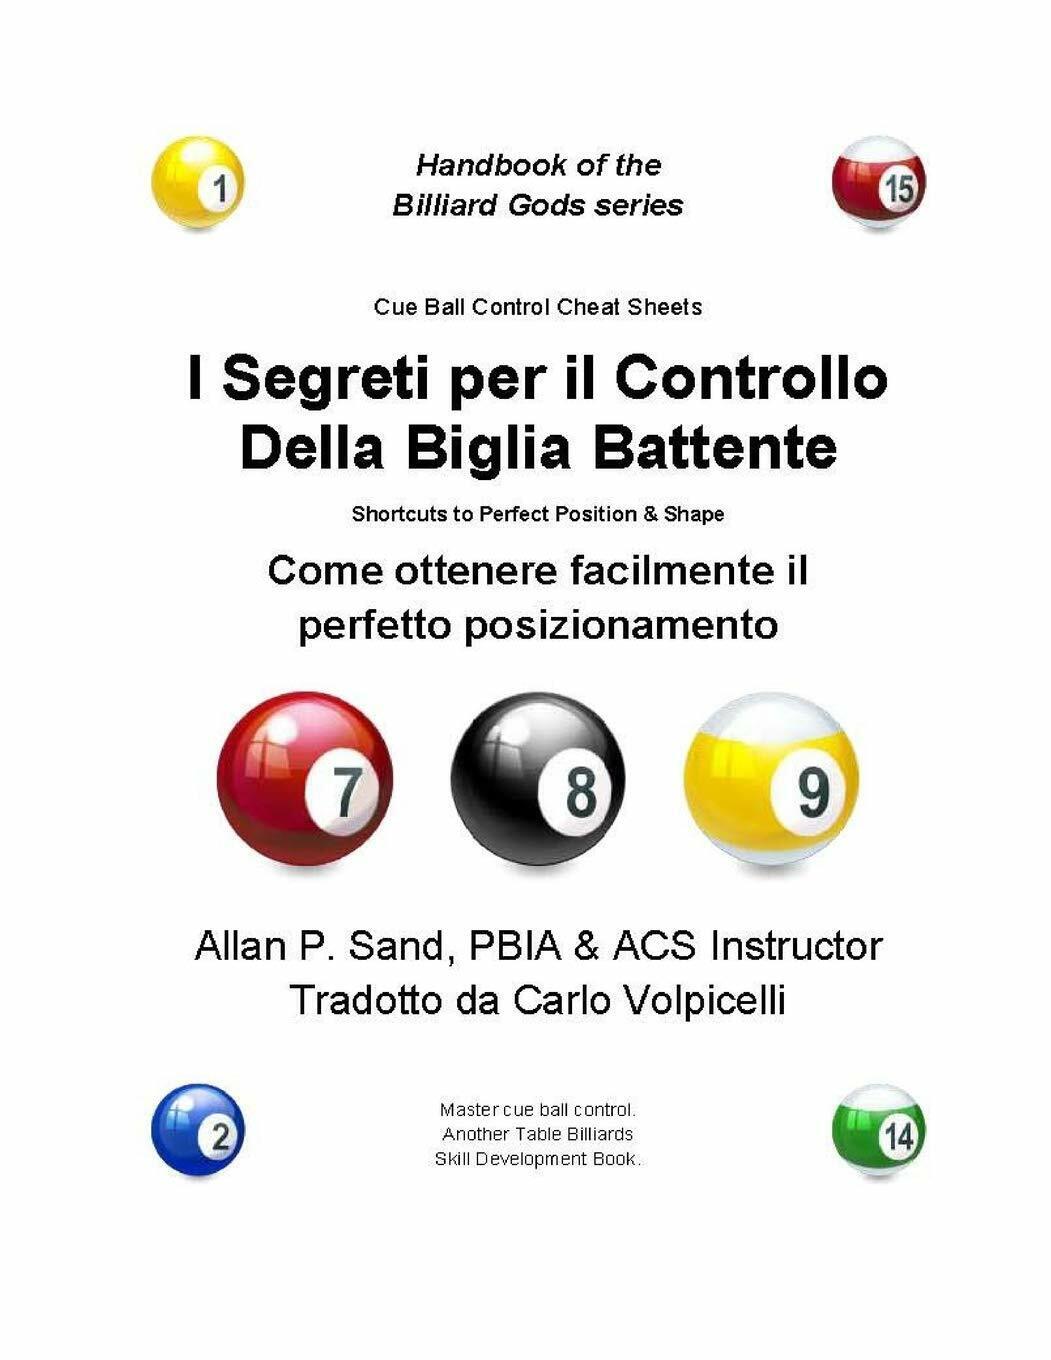 I Segreti per il Controllo Della Biglia Battente - Allan P. Sand - 2012